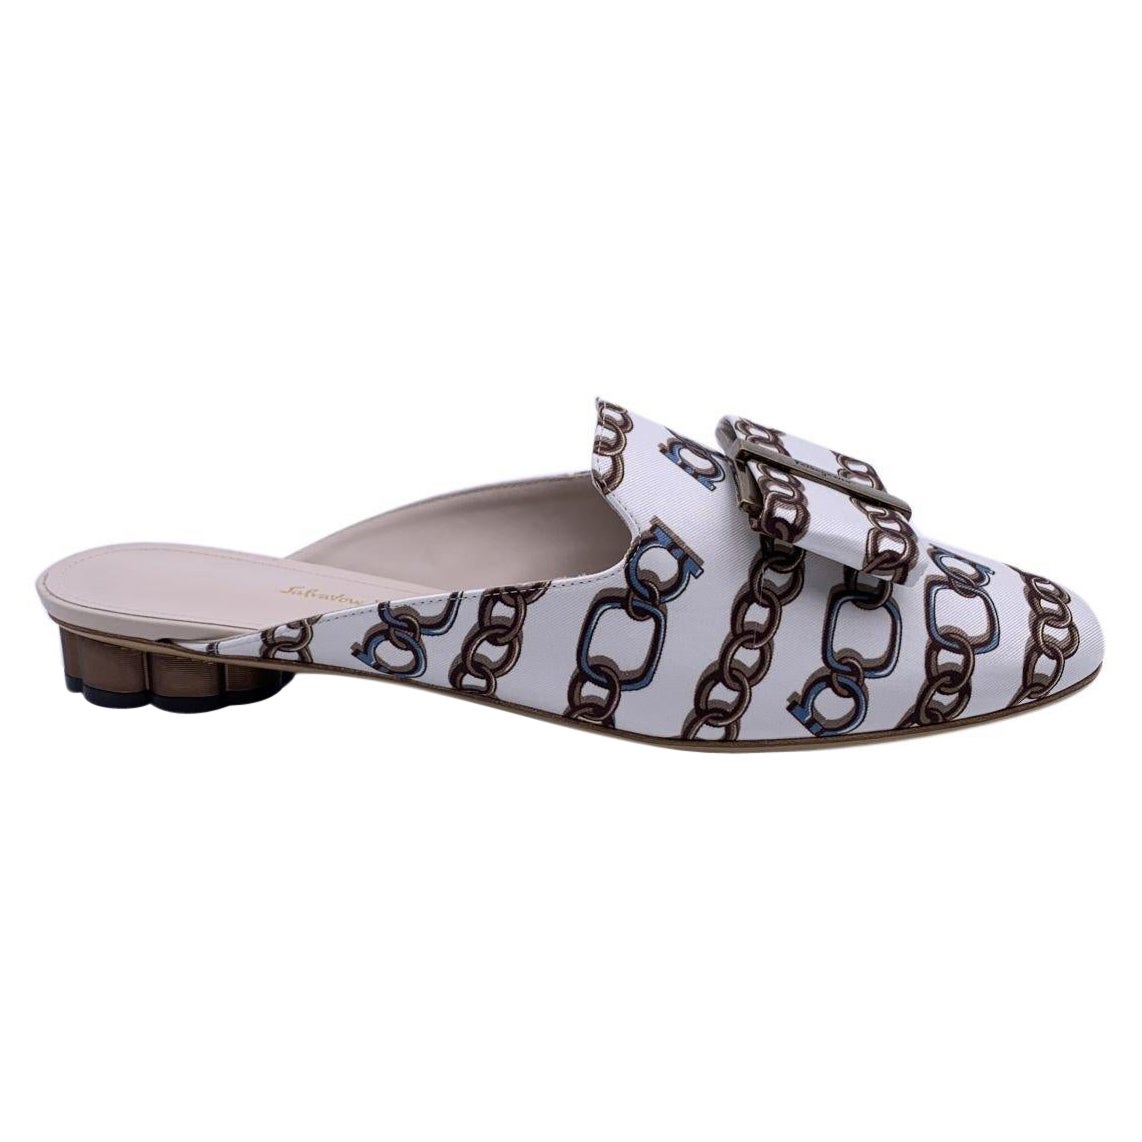 Salvatore Ferragamo White Chain Sciacca Twill Shoes Size US 7 C EU 37.5